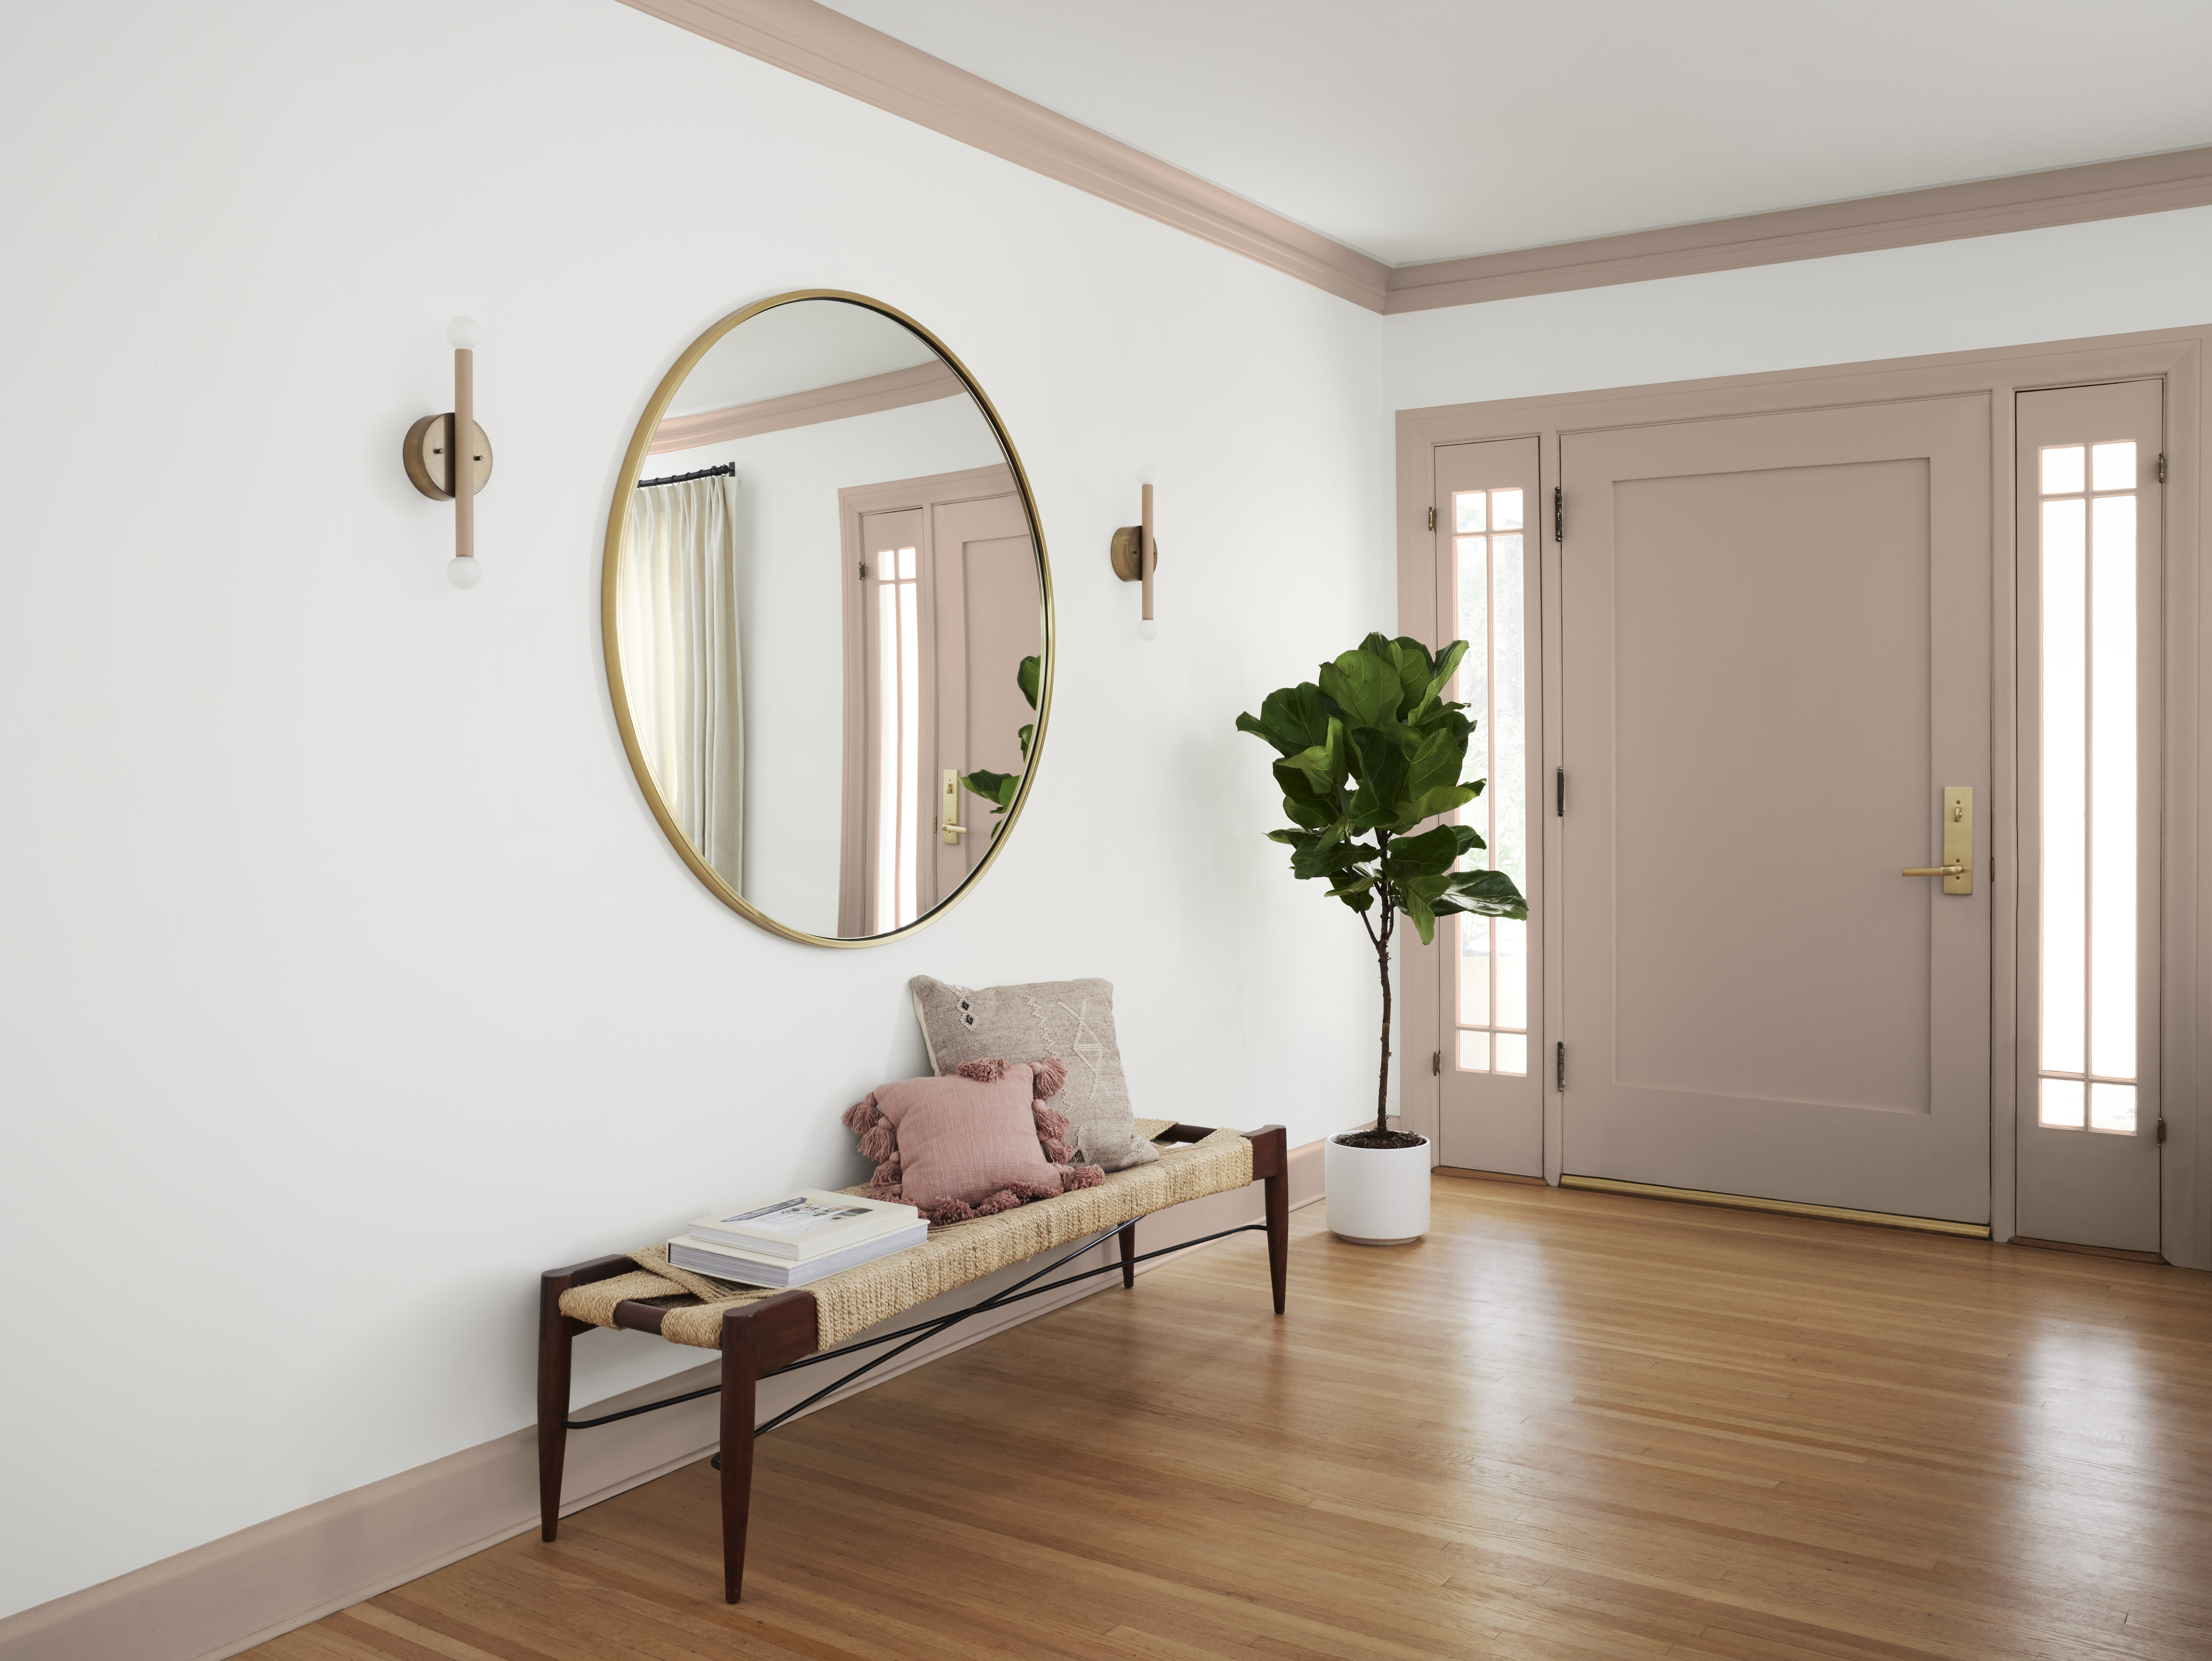 Une entrée spacieuse avec des murs en blanc et porte/garnitures en taupe, décorée d'un miroir rond, d'un banc et d'une plante